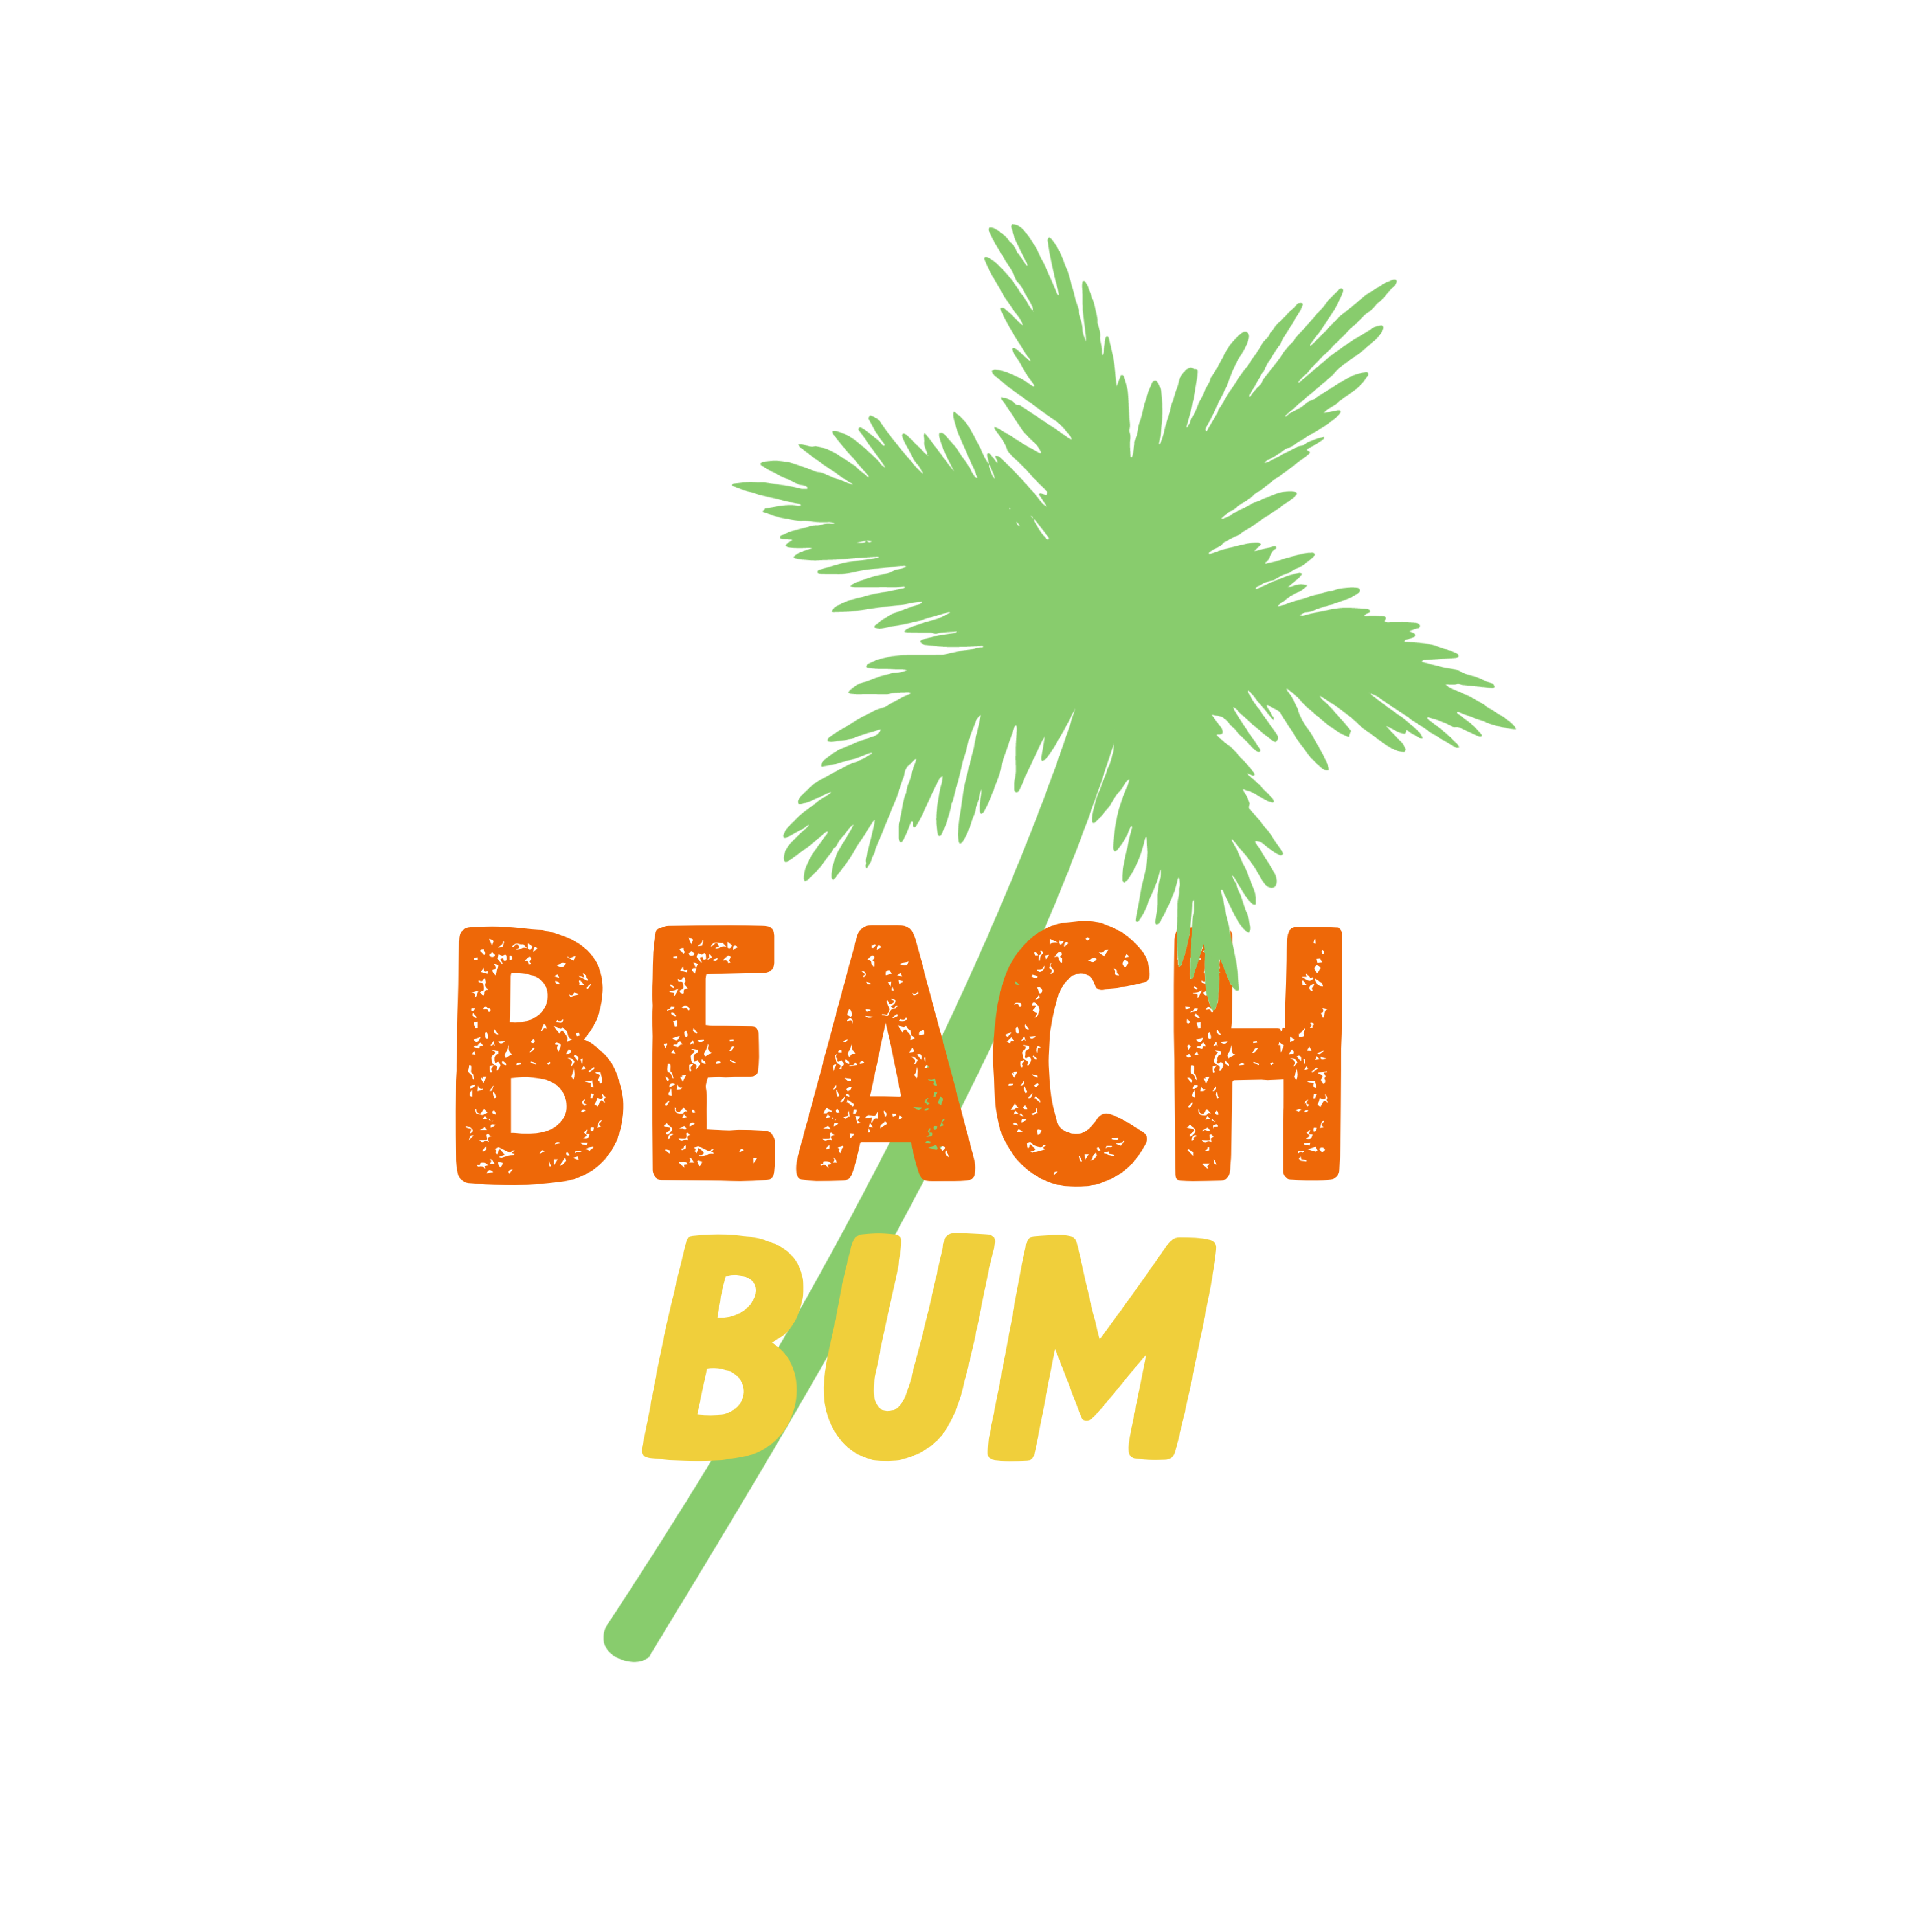 Beach Sticker